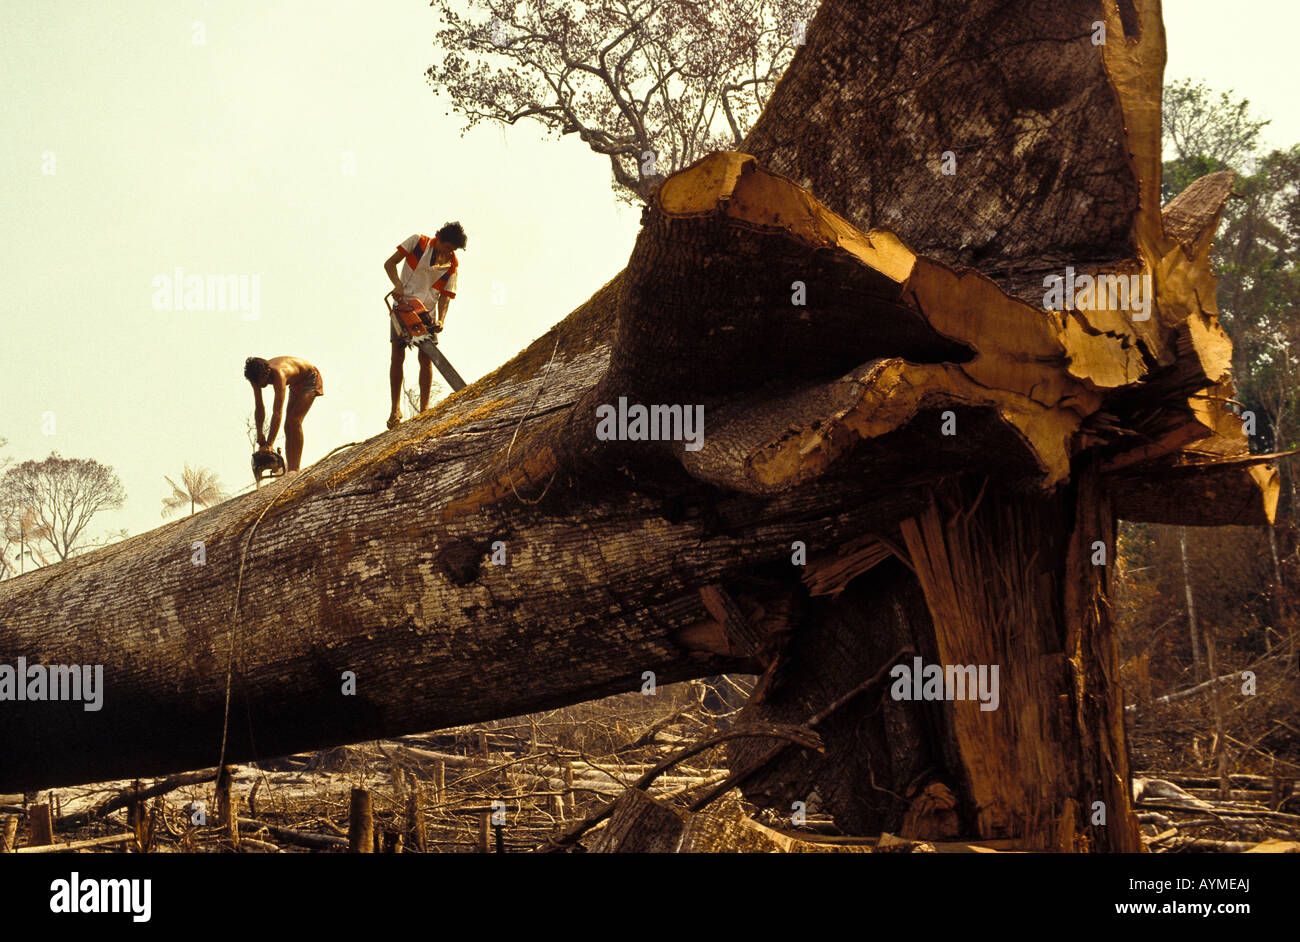 Les bûcherons ont abattu un arbre samauma ou mafumeira ( Ceiba pentandra ), également connu comme la mère des arbres, forêt amazonienne, Brésil. Banque D'Images